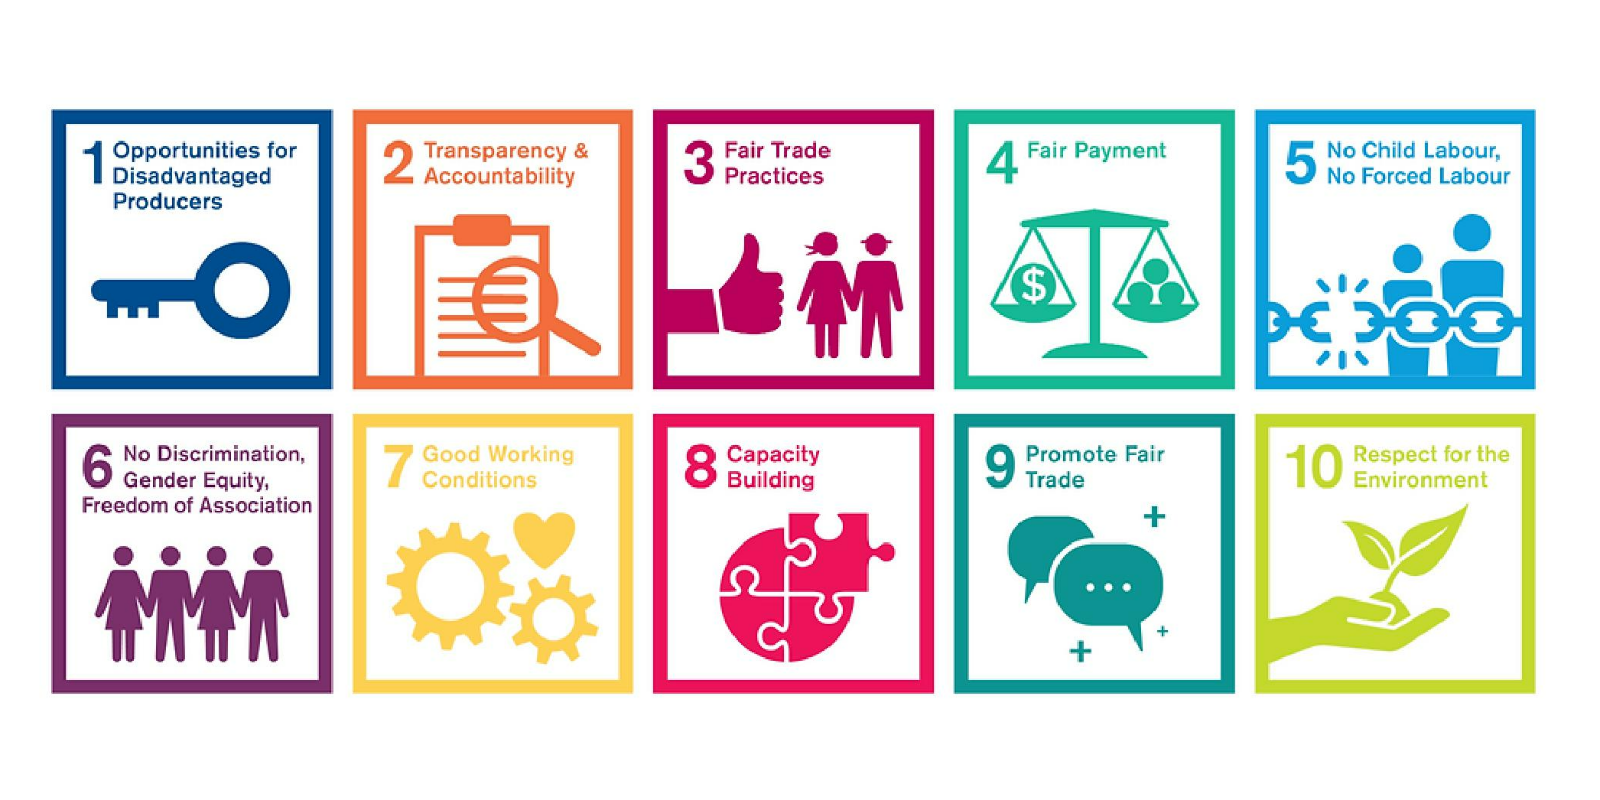 10 Principles of Fair Trade